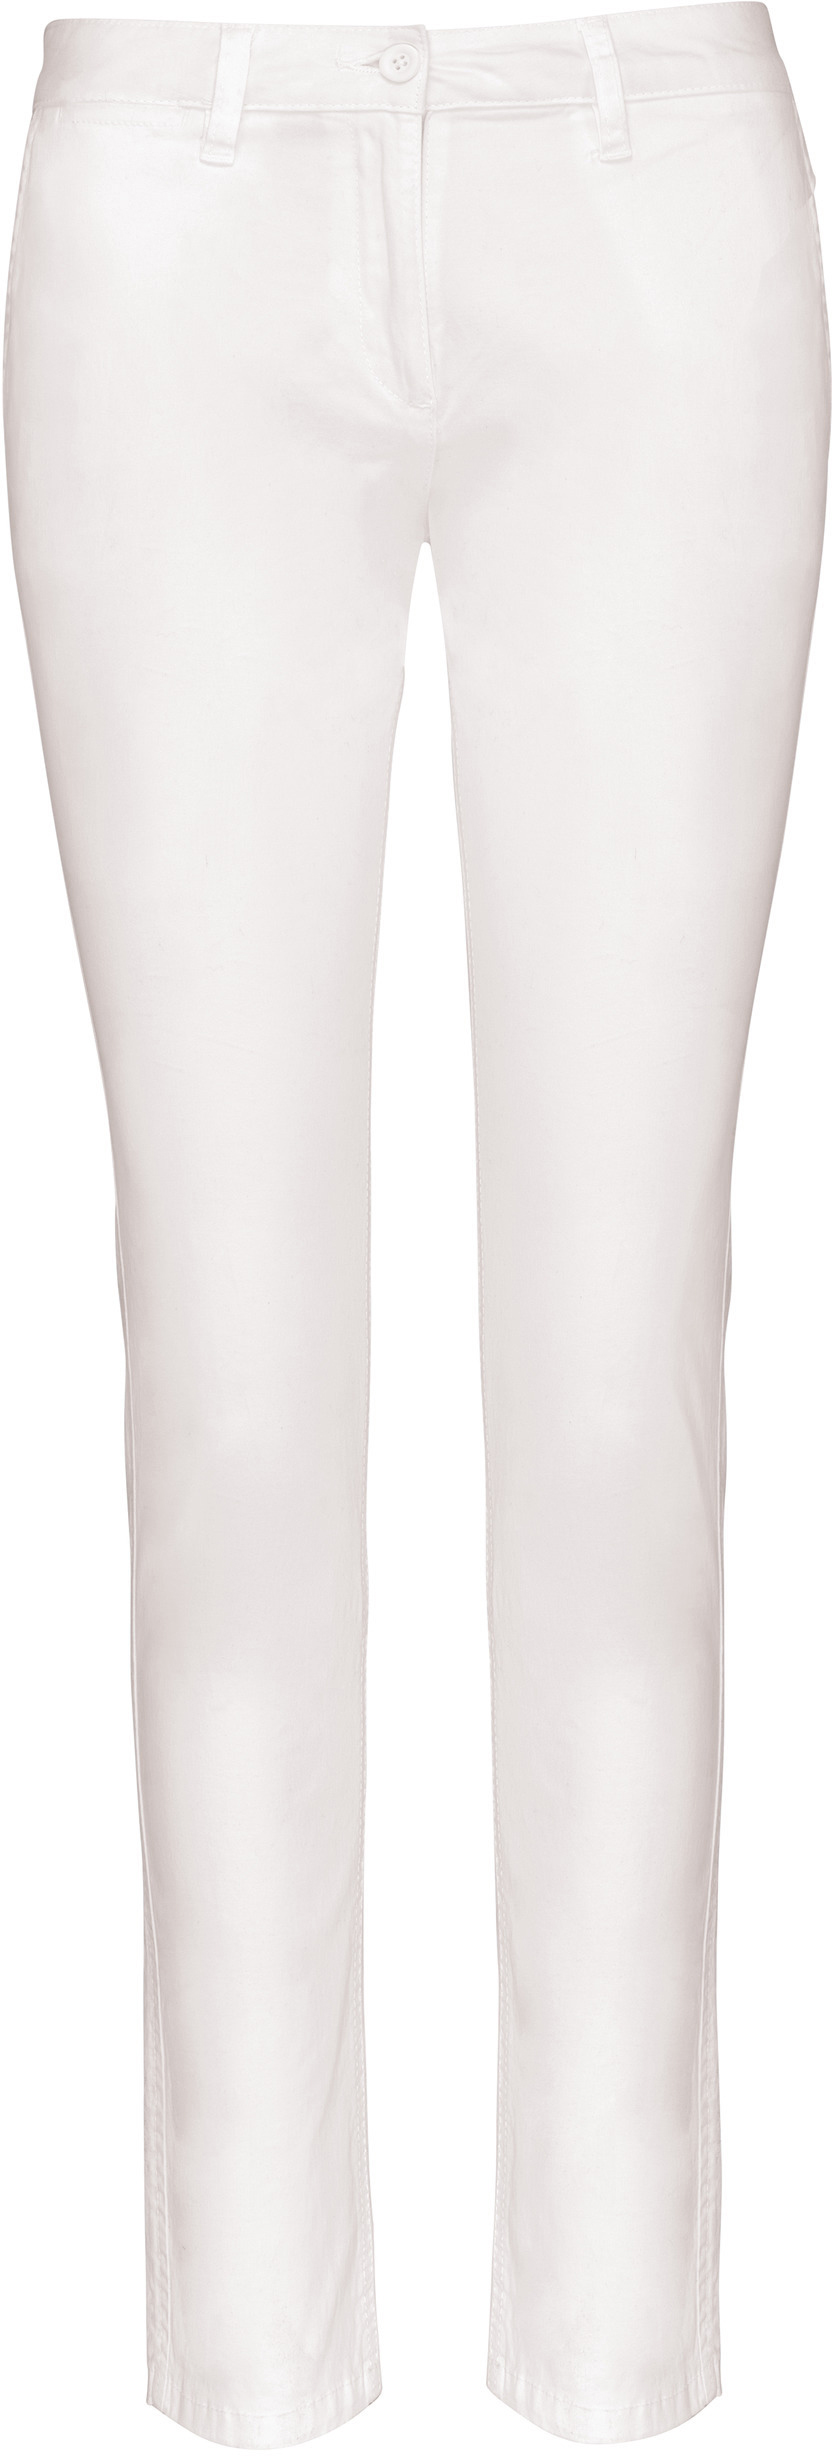 Dámské kalhoty CHINO K741 Barva: bílá, Velikost: 34